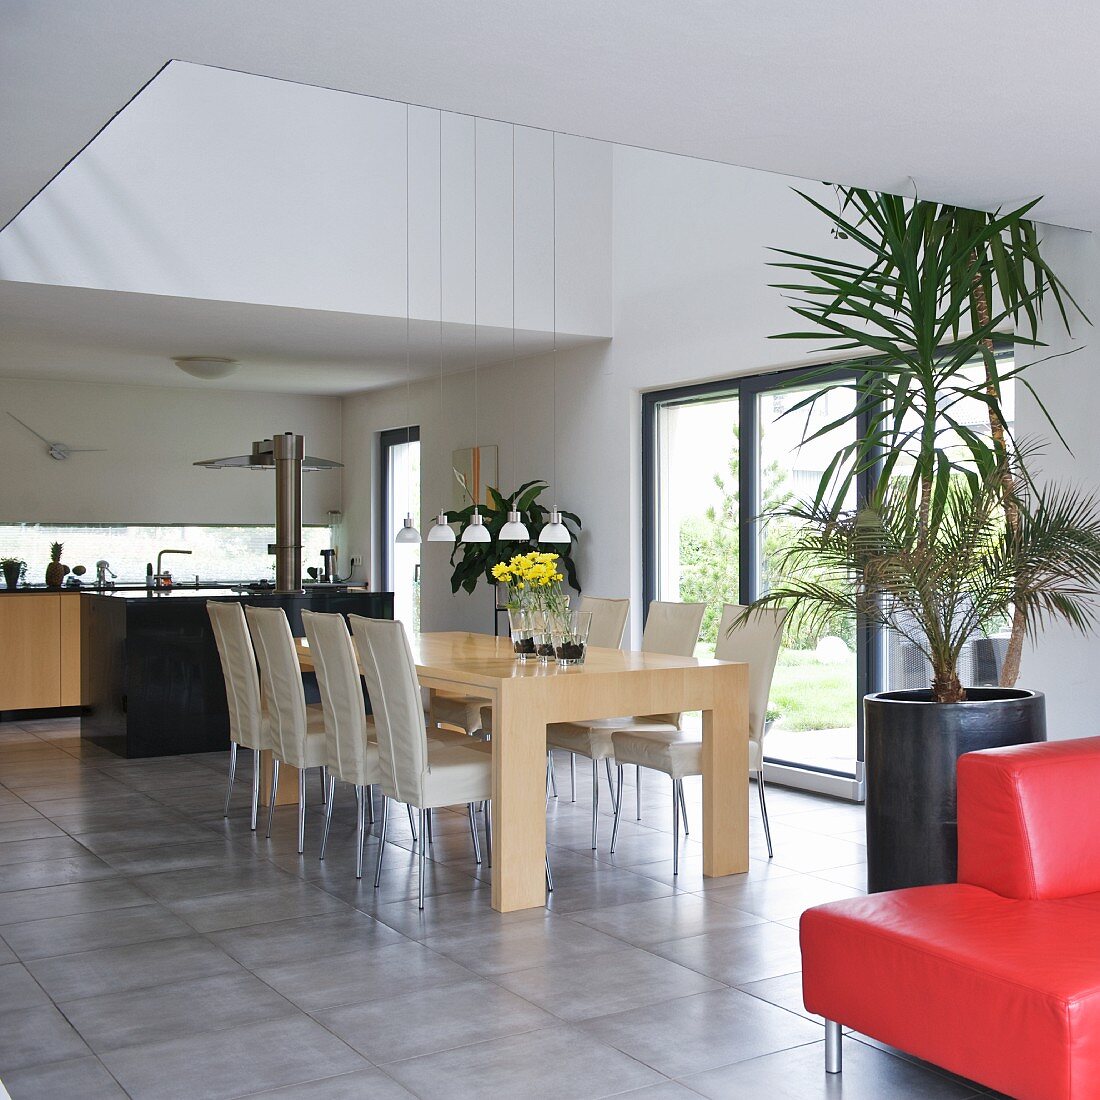 Cooler Designer Wohnraum mit Ess- und Kochbereich - Stühle mit hellem Bezug an Holztisch auf hellgrauem Steinboden unter Lichtschacht